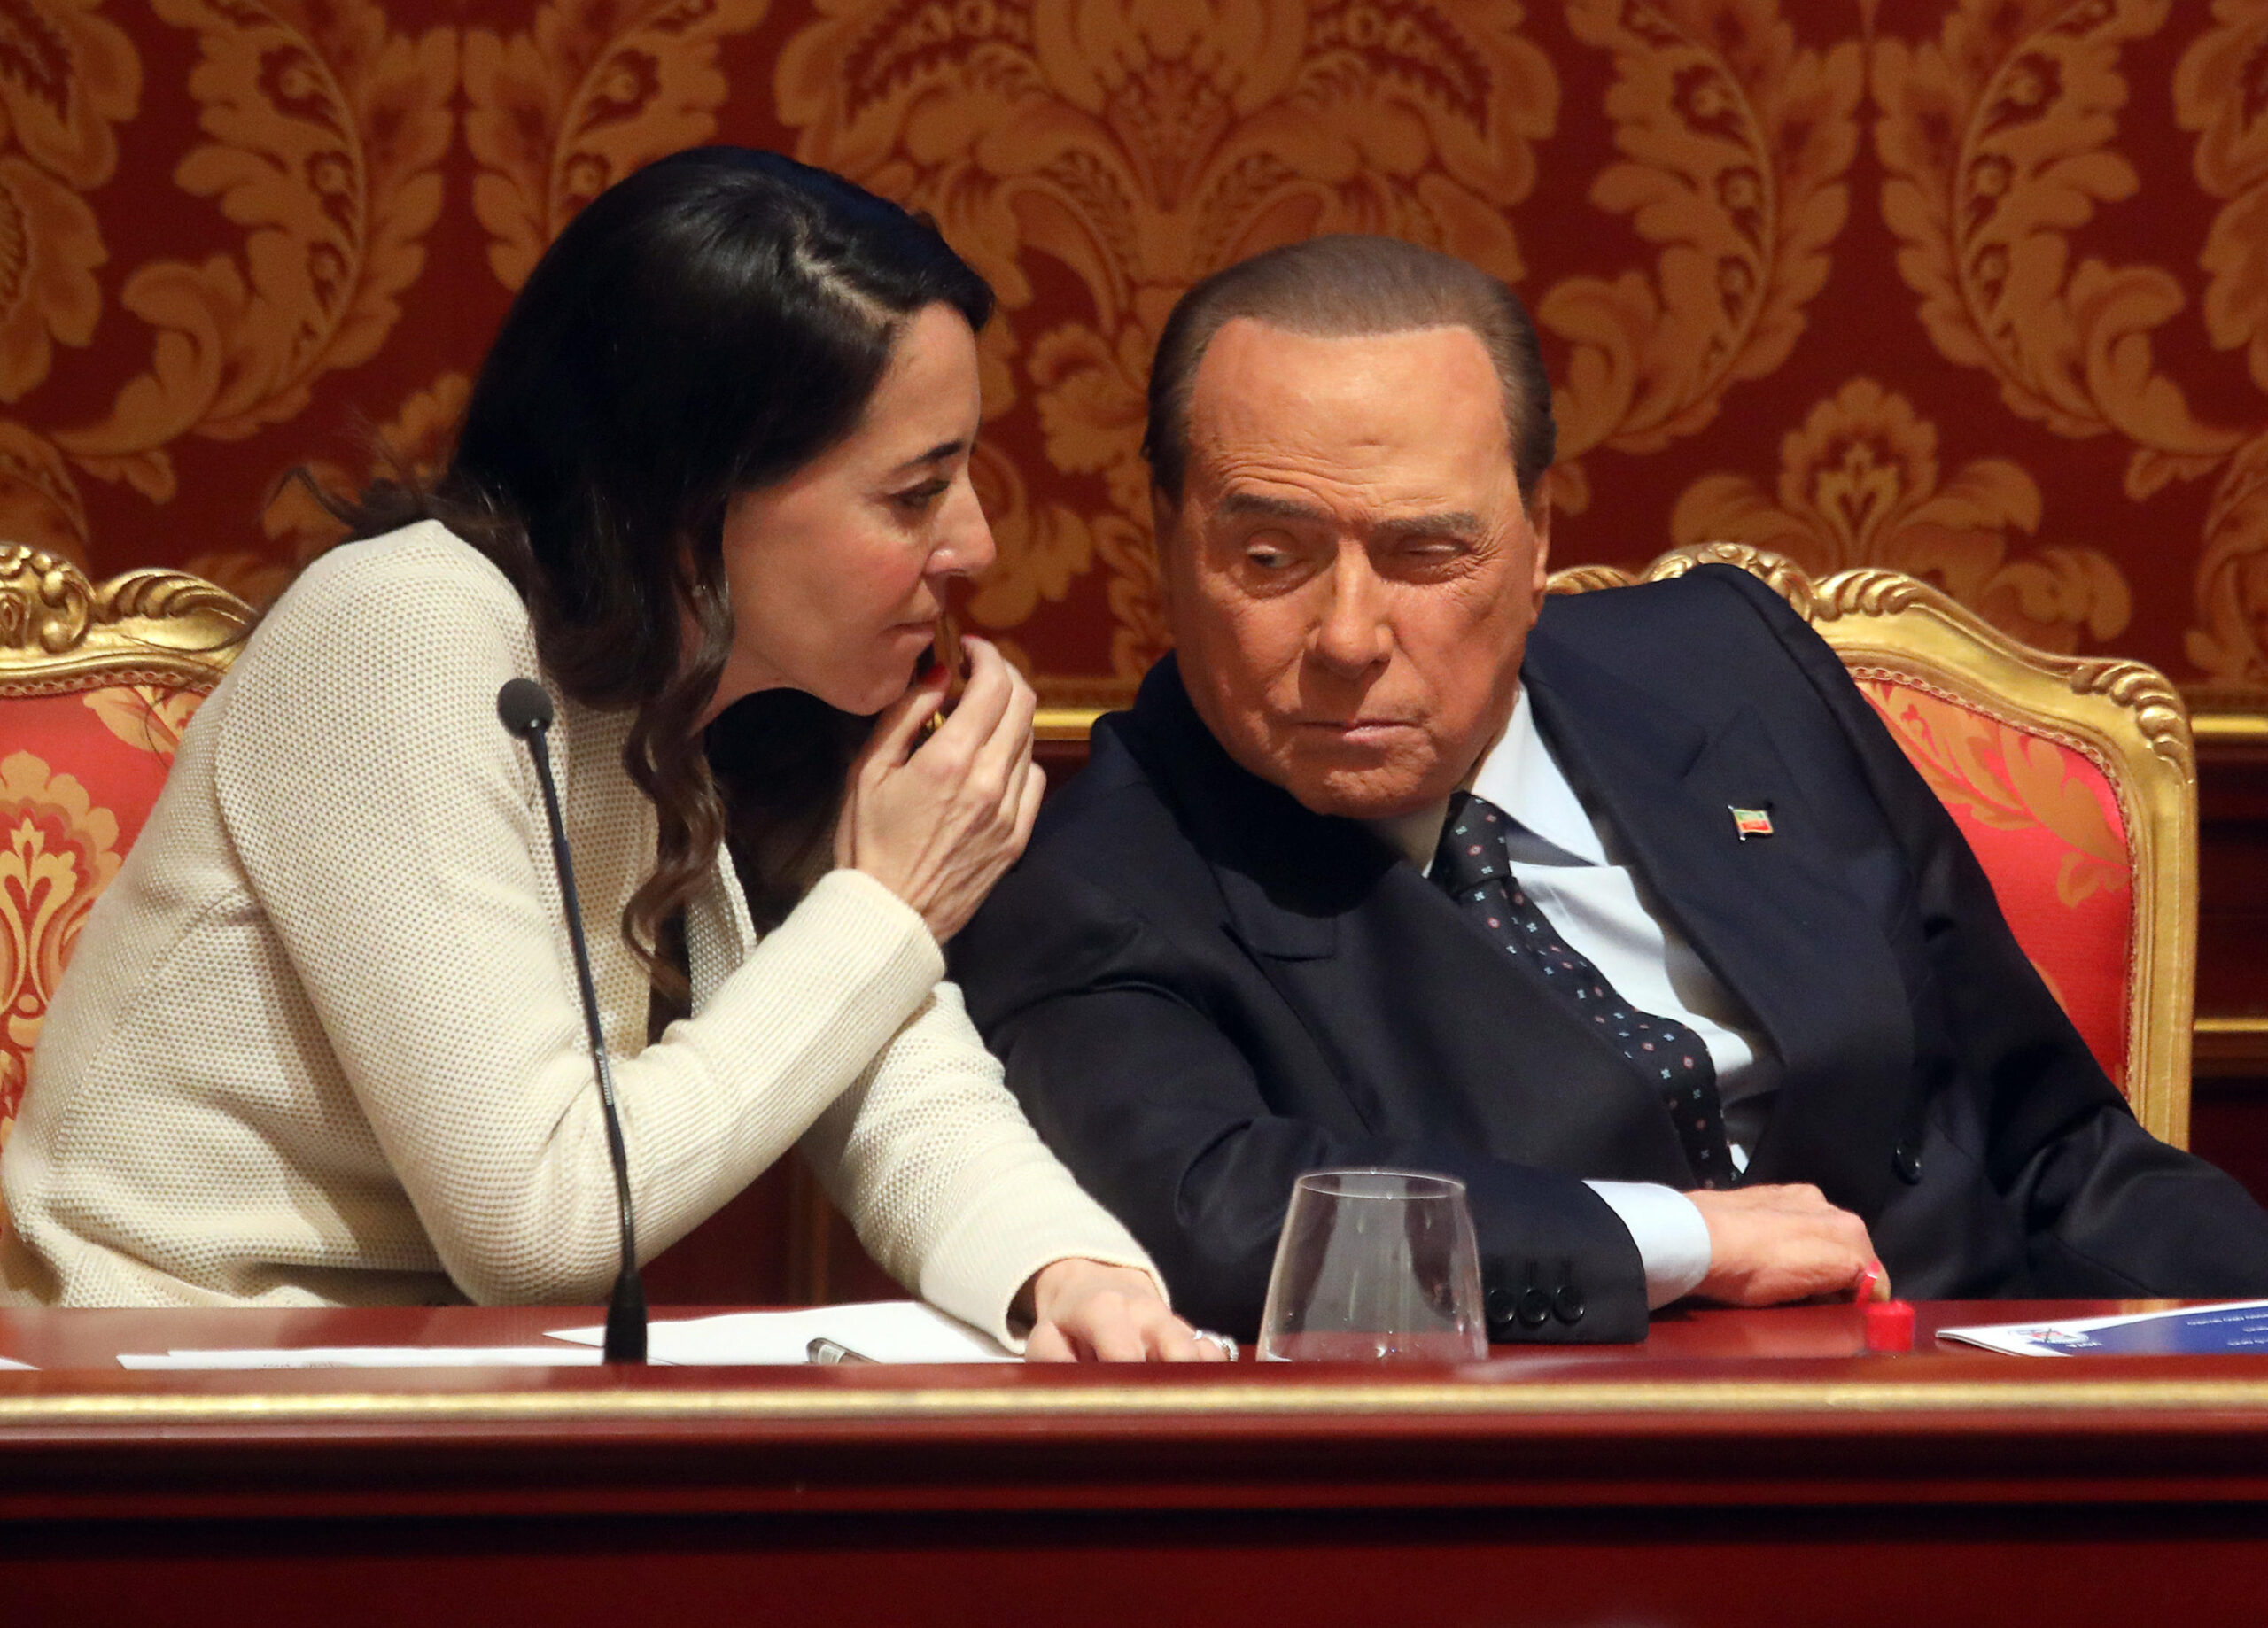 Berlusconi promuove Cattaneo a vicecoordinatore del partito, ma lo rimuove da capogruppo. A Ronzulli viene tolta la guida della Lombardia